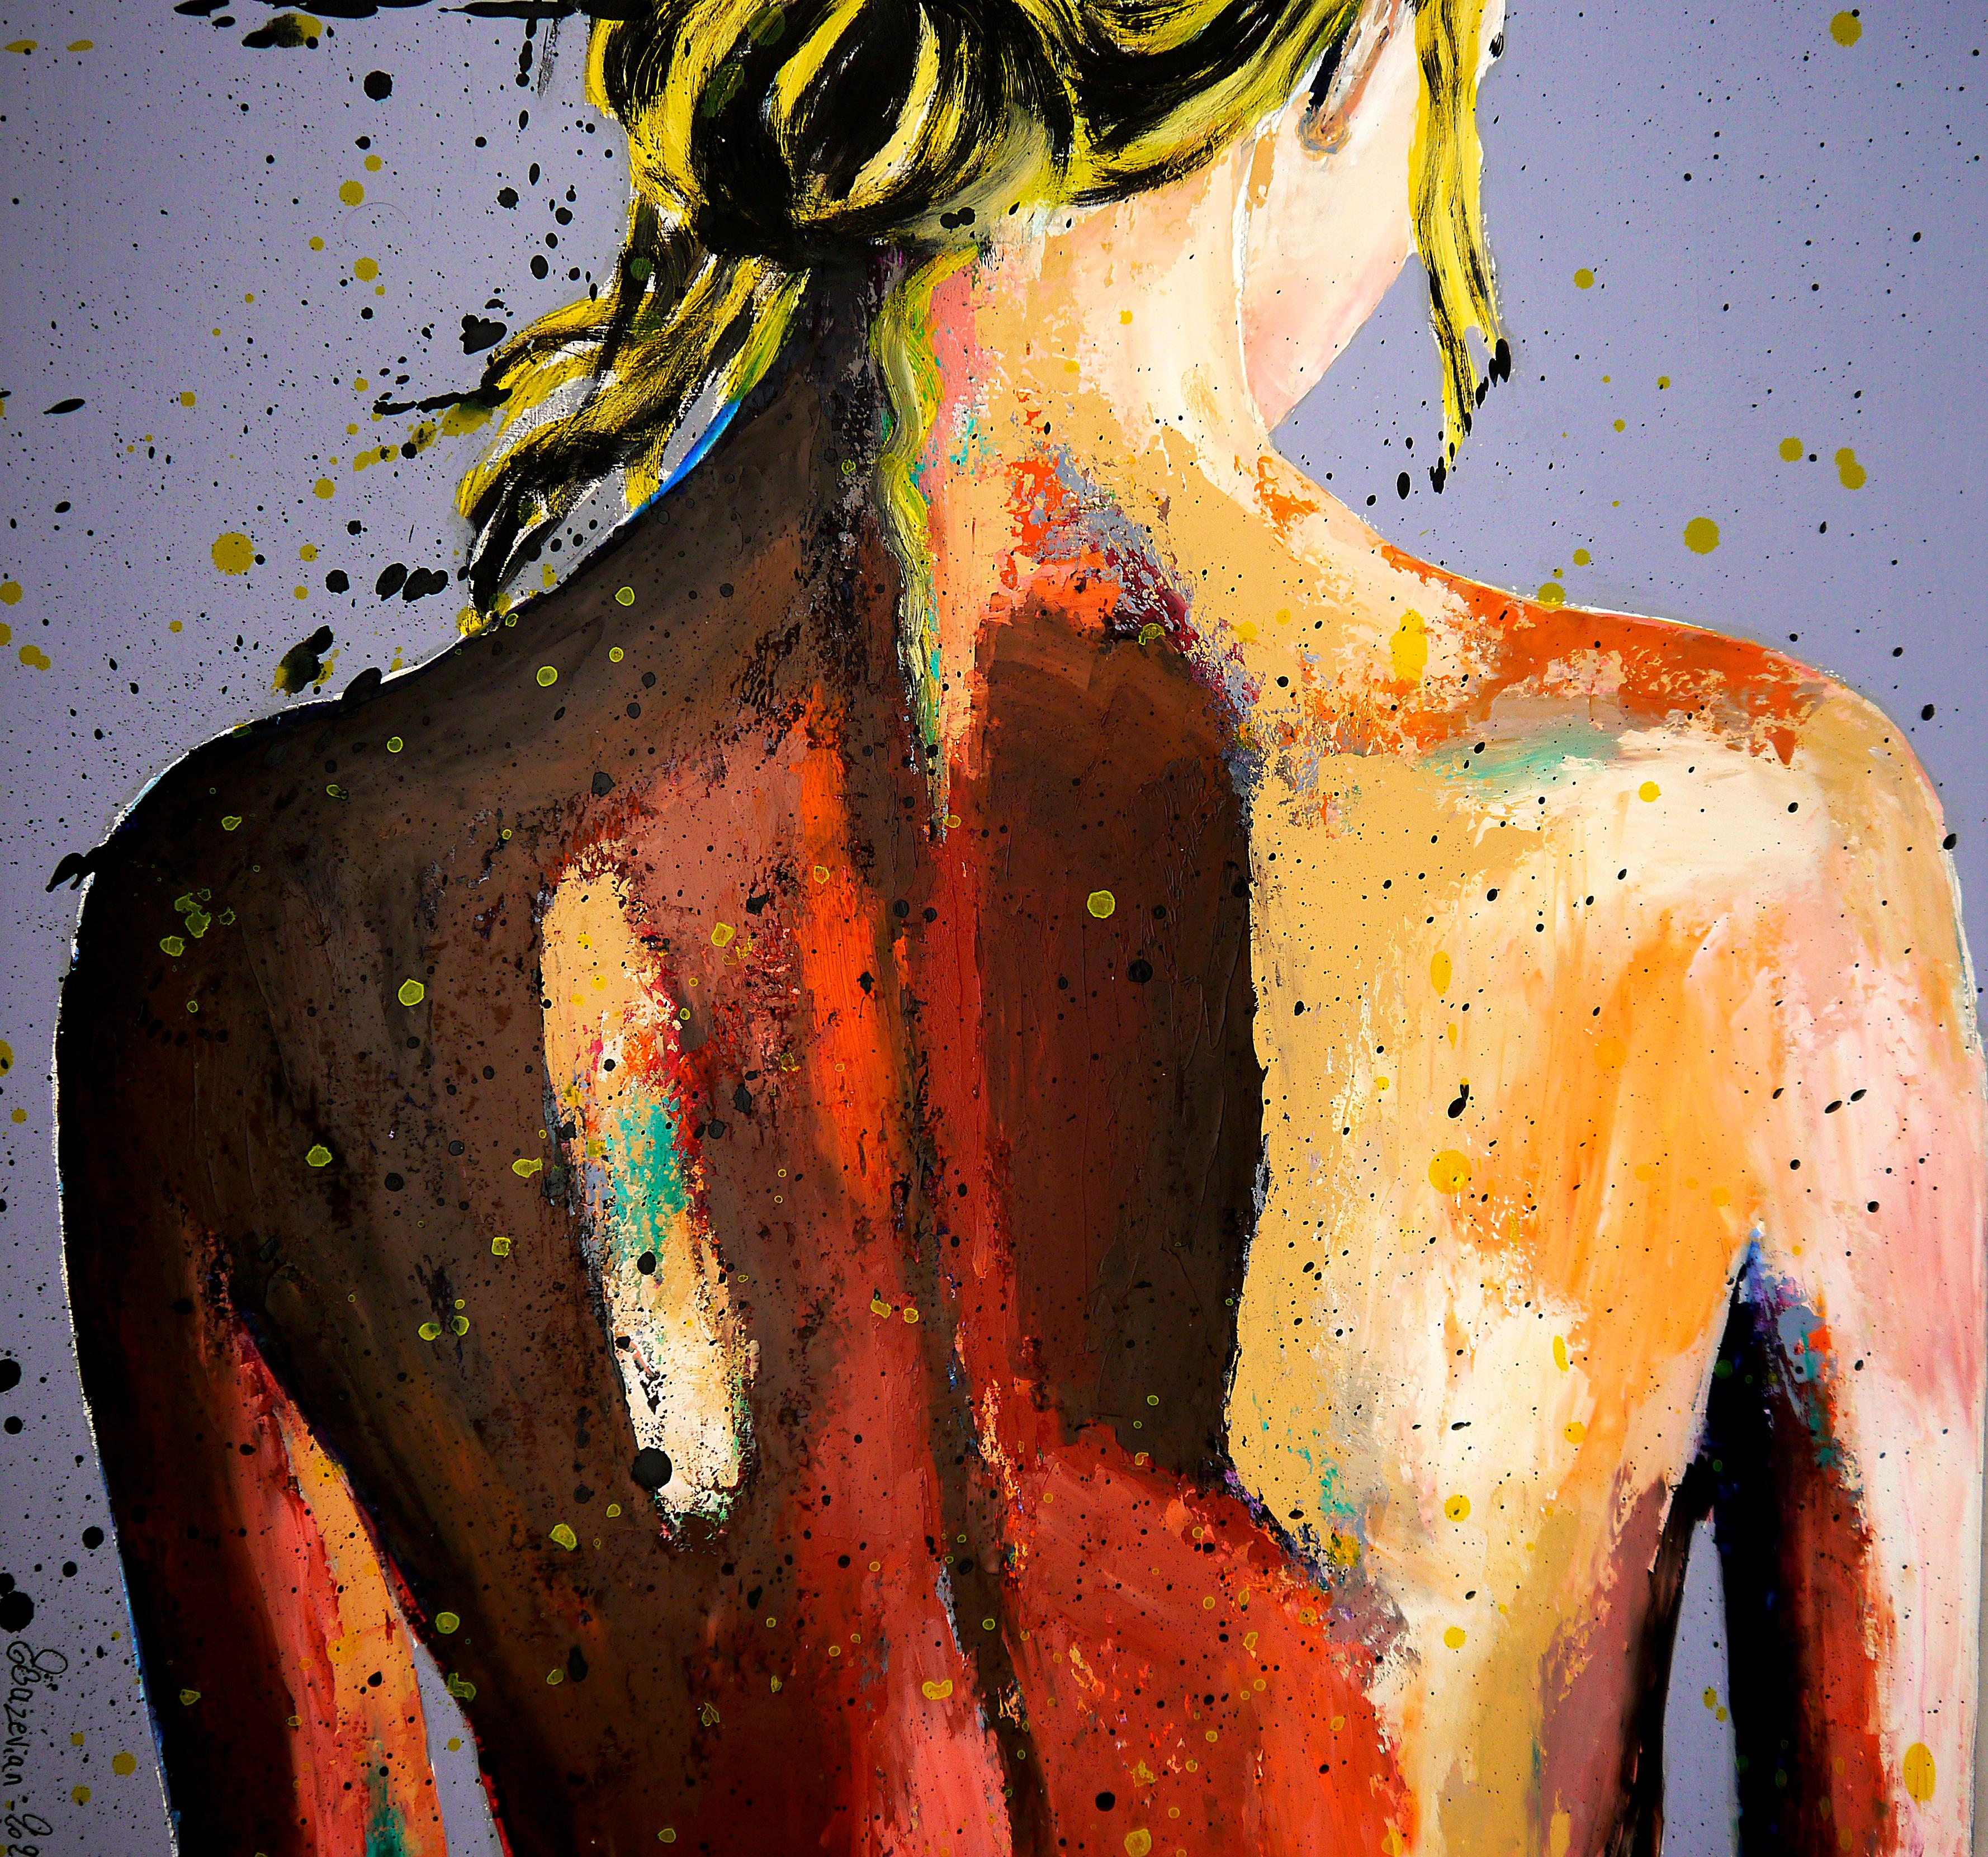 PS 238 Le temps des Jonquilles

Porträt einer Frau mit nacktem Rücken.

Strukturelle Analyse:
Zum Beispiel die impressionistische Malerei,   Das Thema ist in erster Linie eine Studie über das Licht auf dem menschlichen Körper, das starke Kontraste